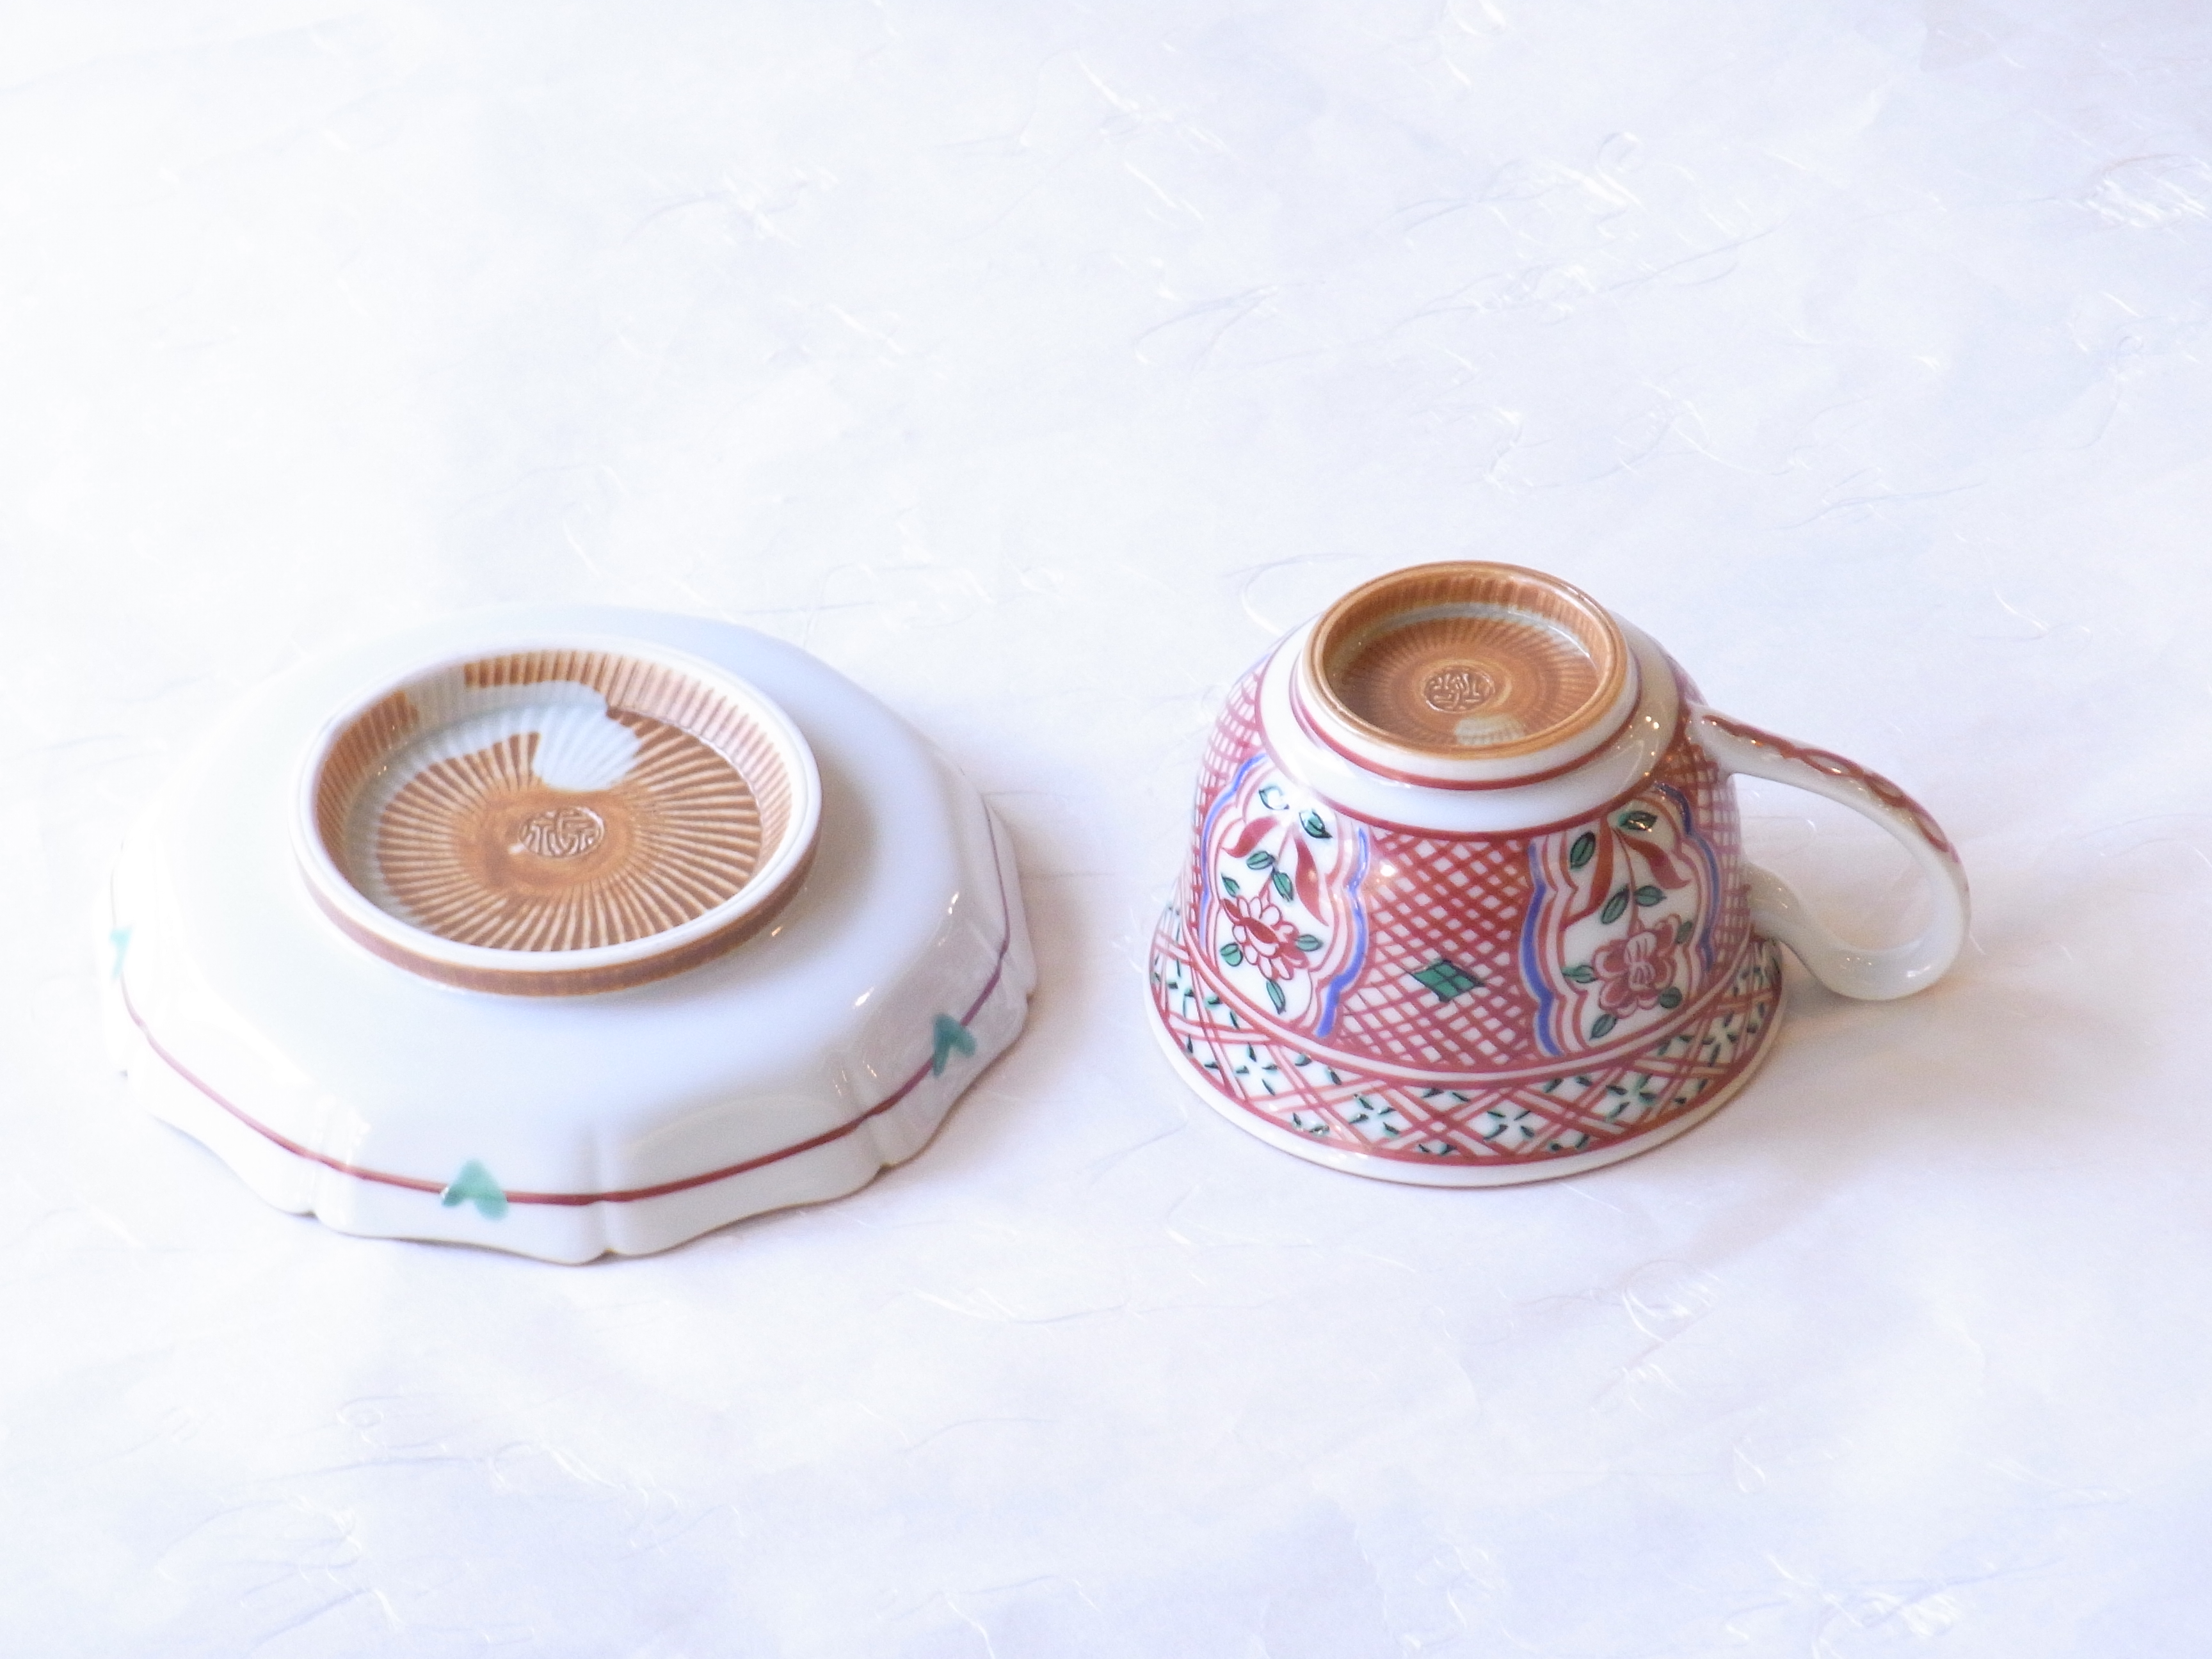 清水焼 赤絵 染付小紋 コーヒー碗皿 | 小林漆陶 映える器ギャラリー 岐阜市| 日本一の漆陶器 茶道具の品揃えと在庫 | 漆器 陶器 茶華道具